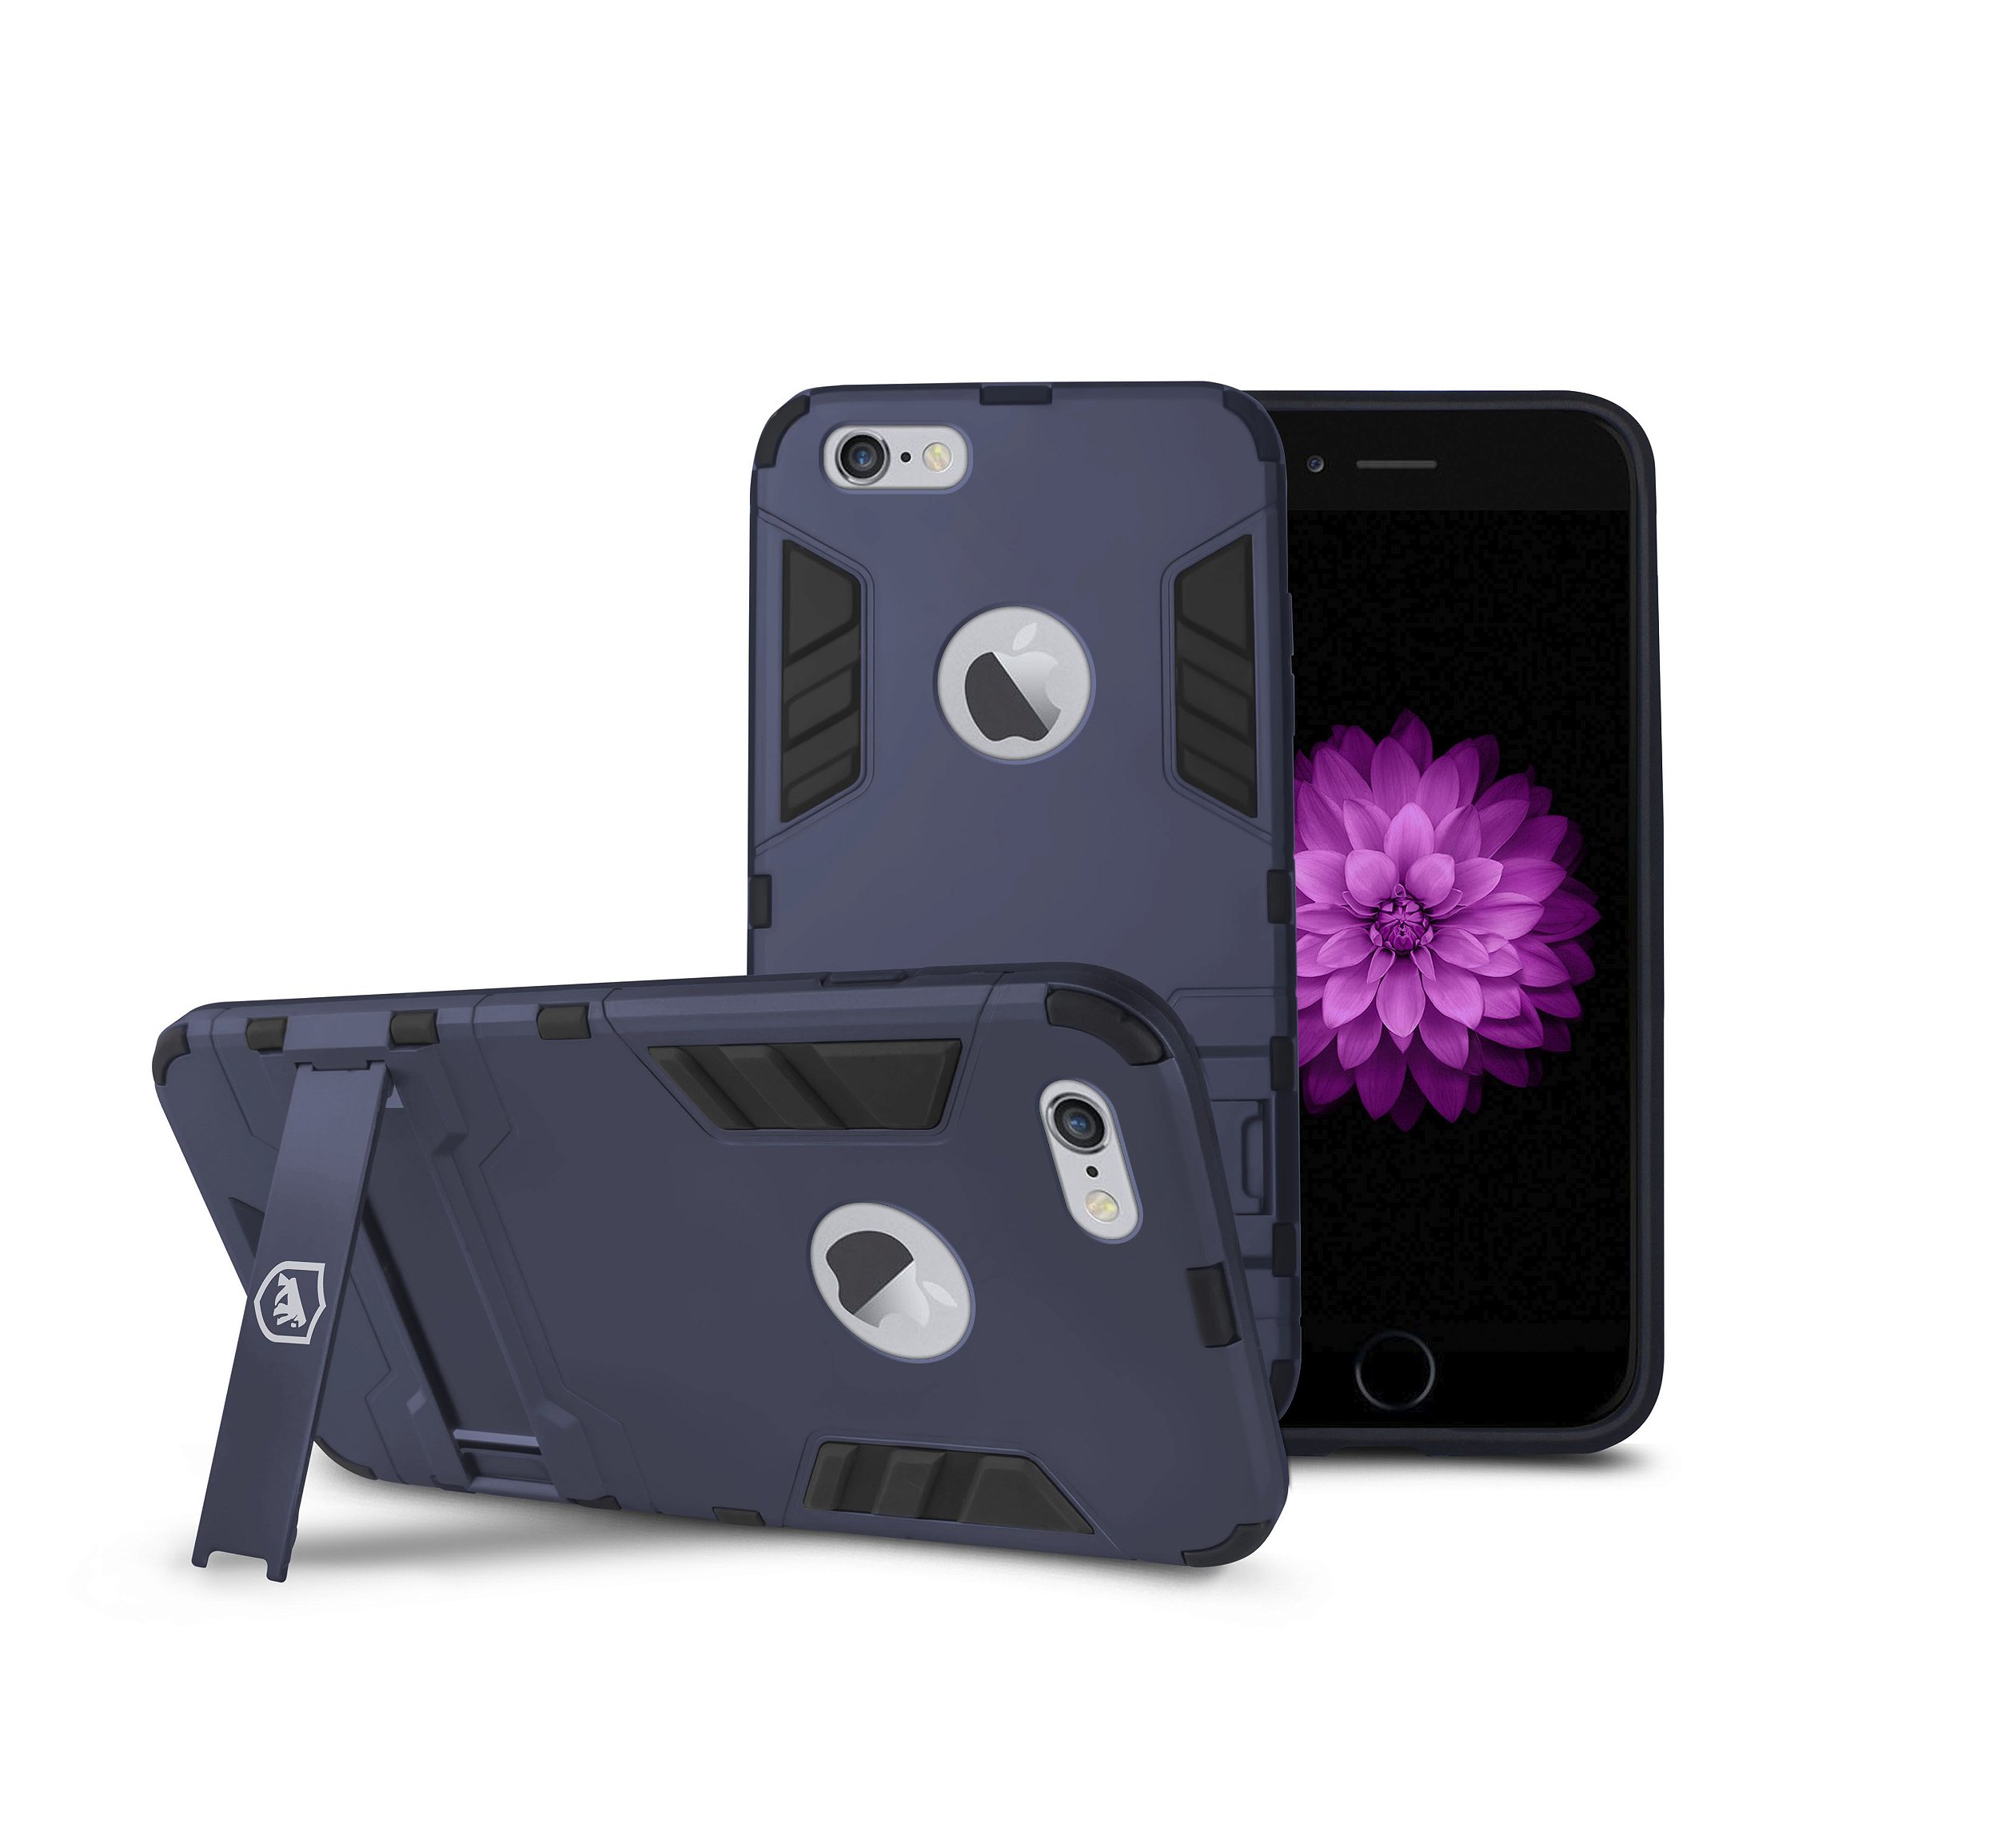 Capa para iPhone 6 / 6s - Armor - Gshield - Gshield - Capas para celular,  Películas, Cabos e muito mais